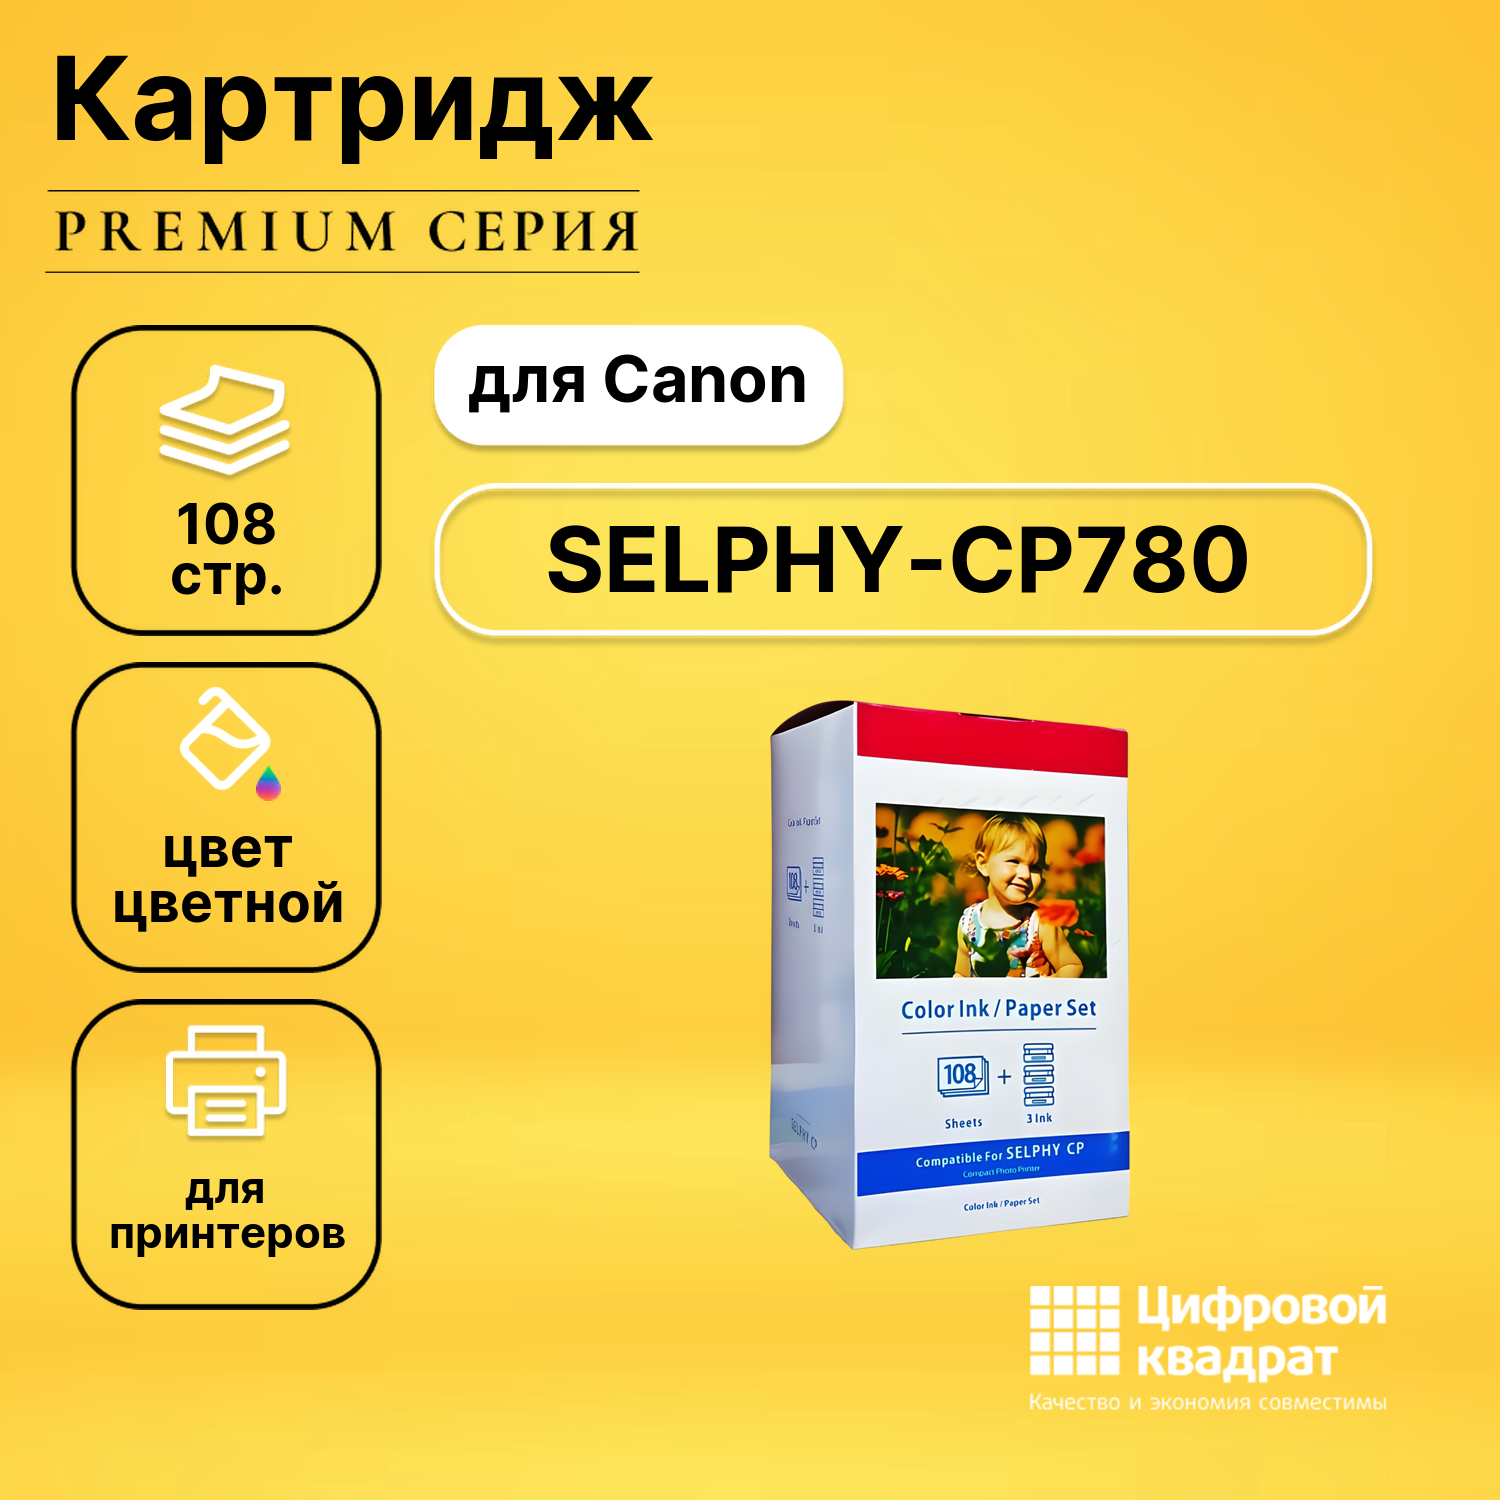 Набор для печати SELPHY-CP780 для Canon 3 картриджа + фотобумага, 108 листов совместимый